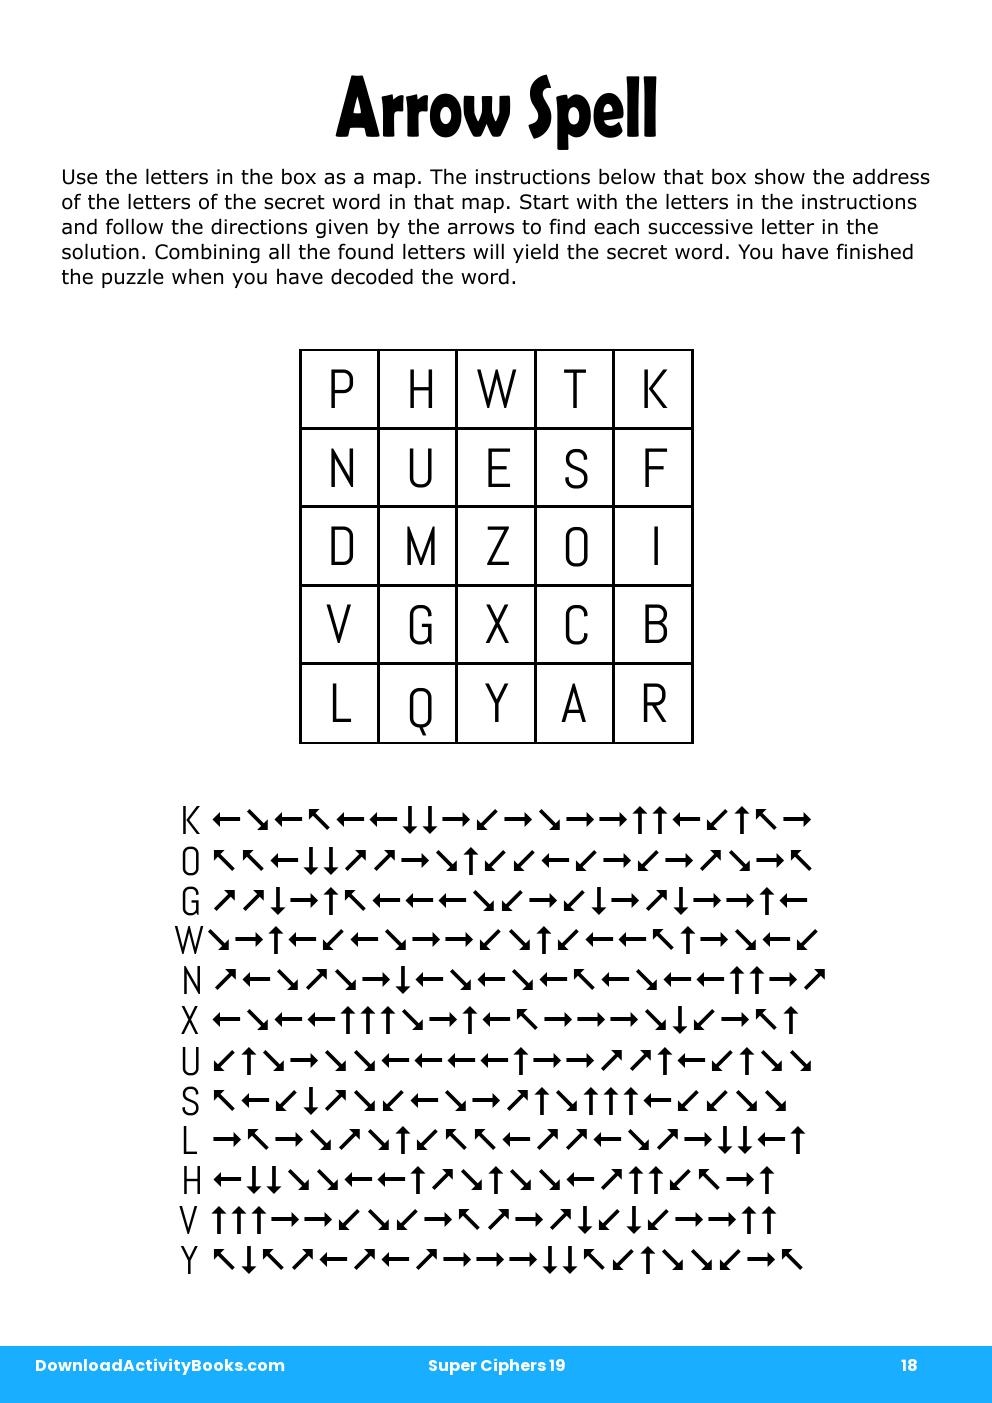 Arrow Spell in Super Ciphers 19